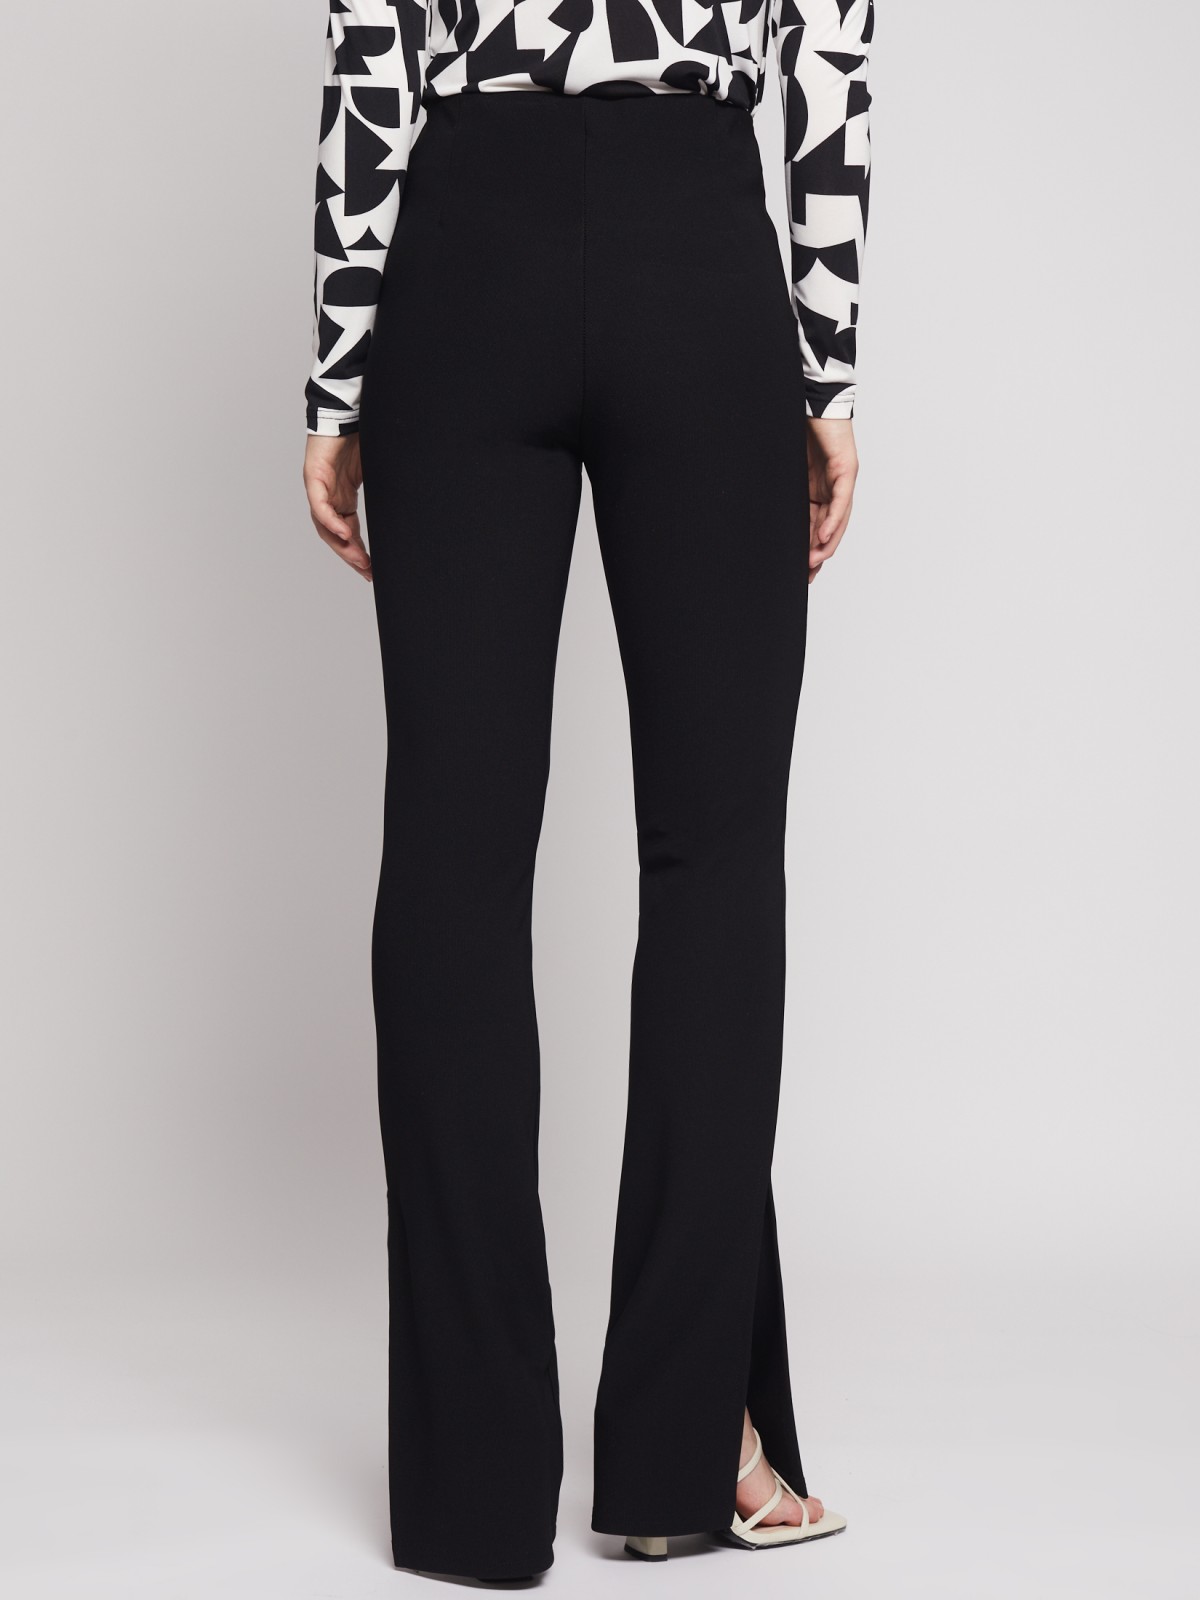 Трикотажные брюки клеш с разрезами внизу zolla 023137662011, цвет черный, размер XS - фото 6